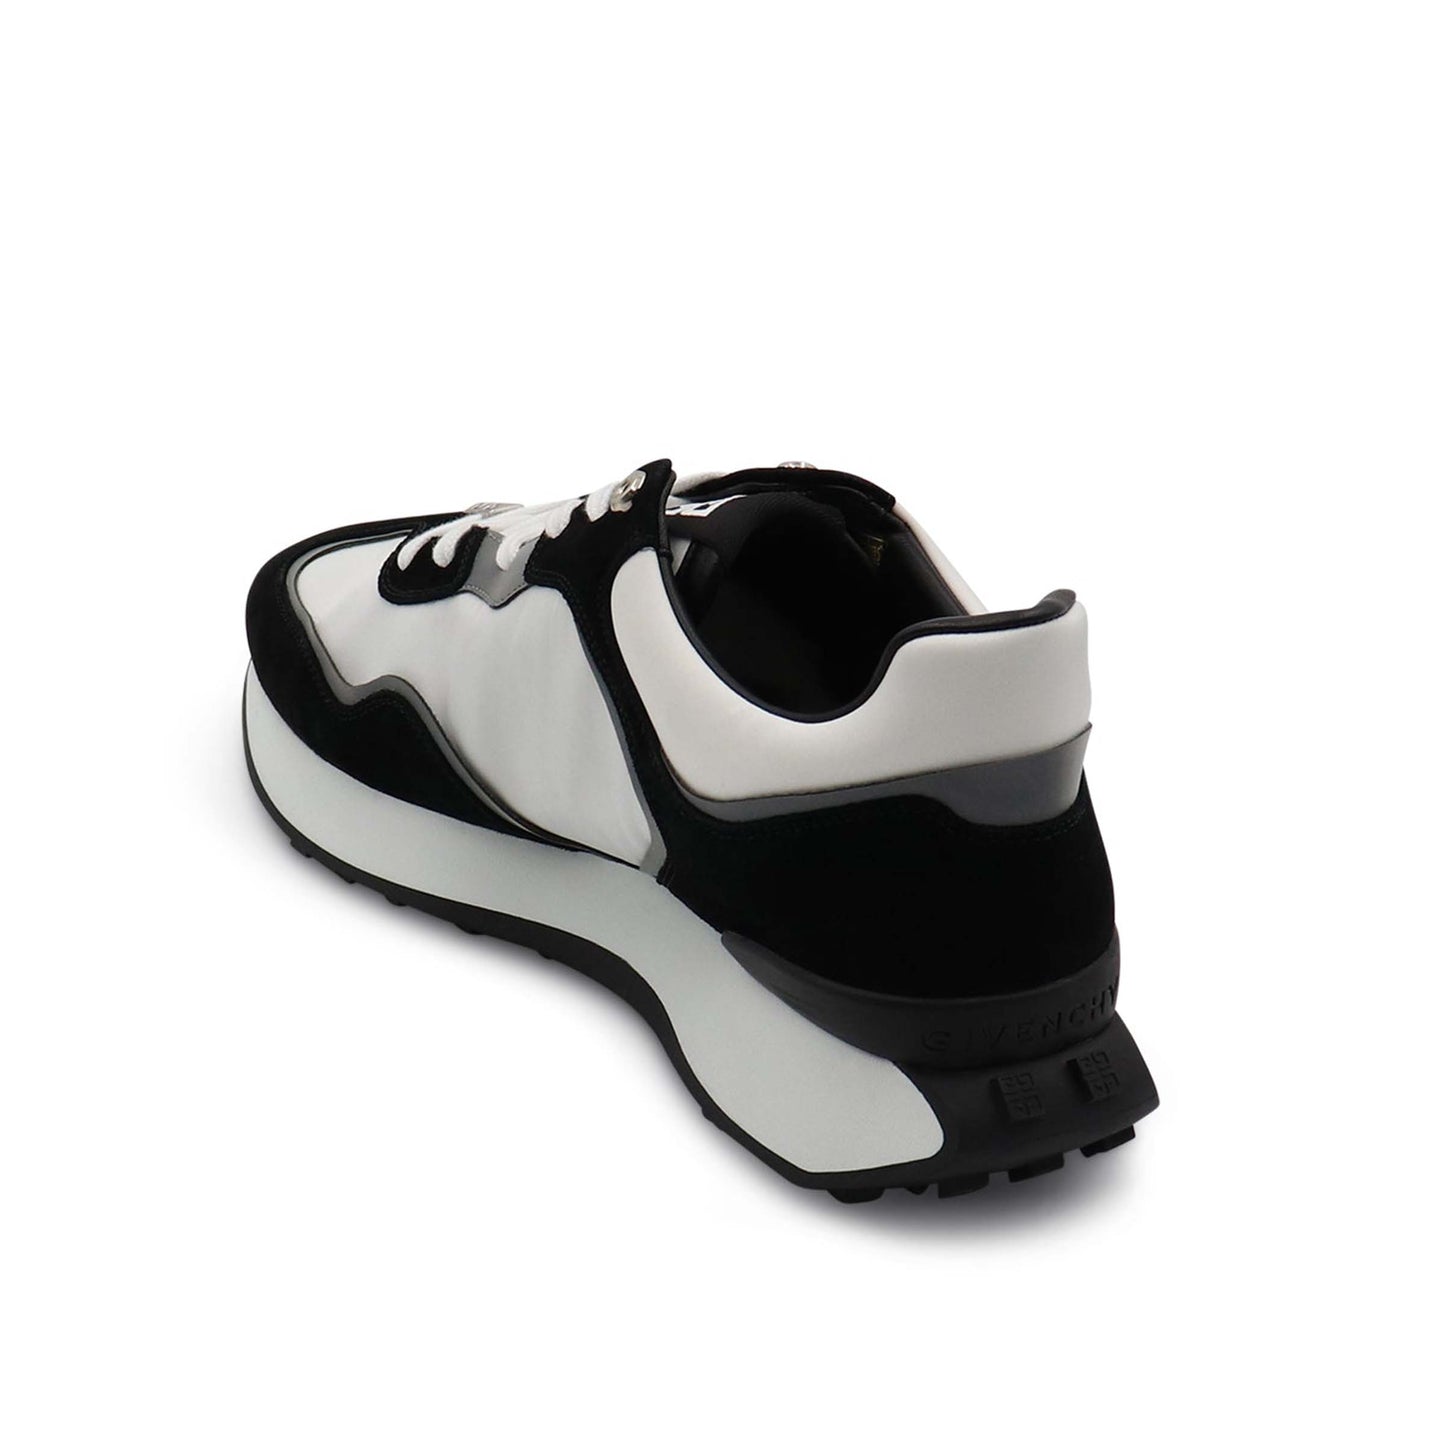 GIV Runner Sneakers in Black/Grey